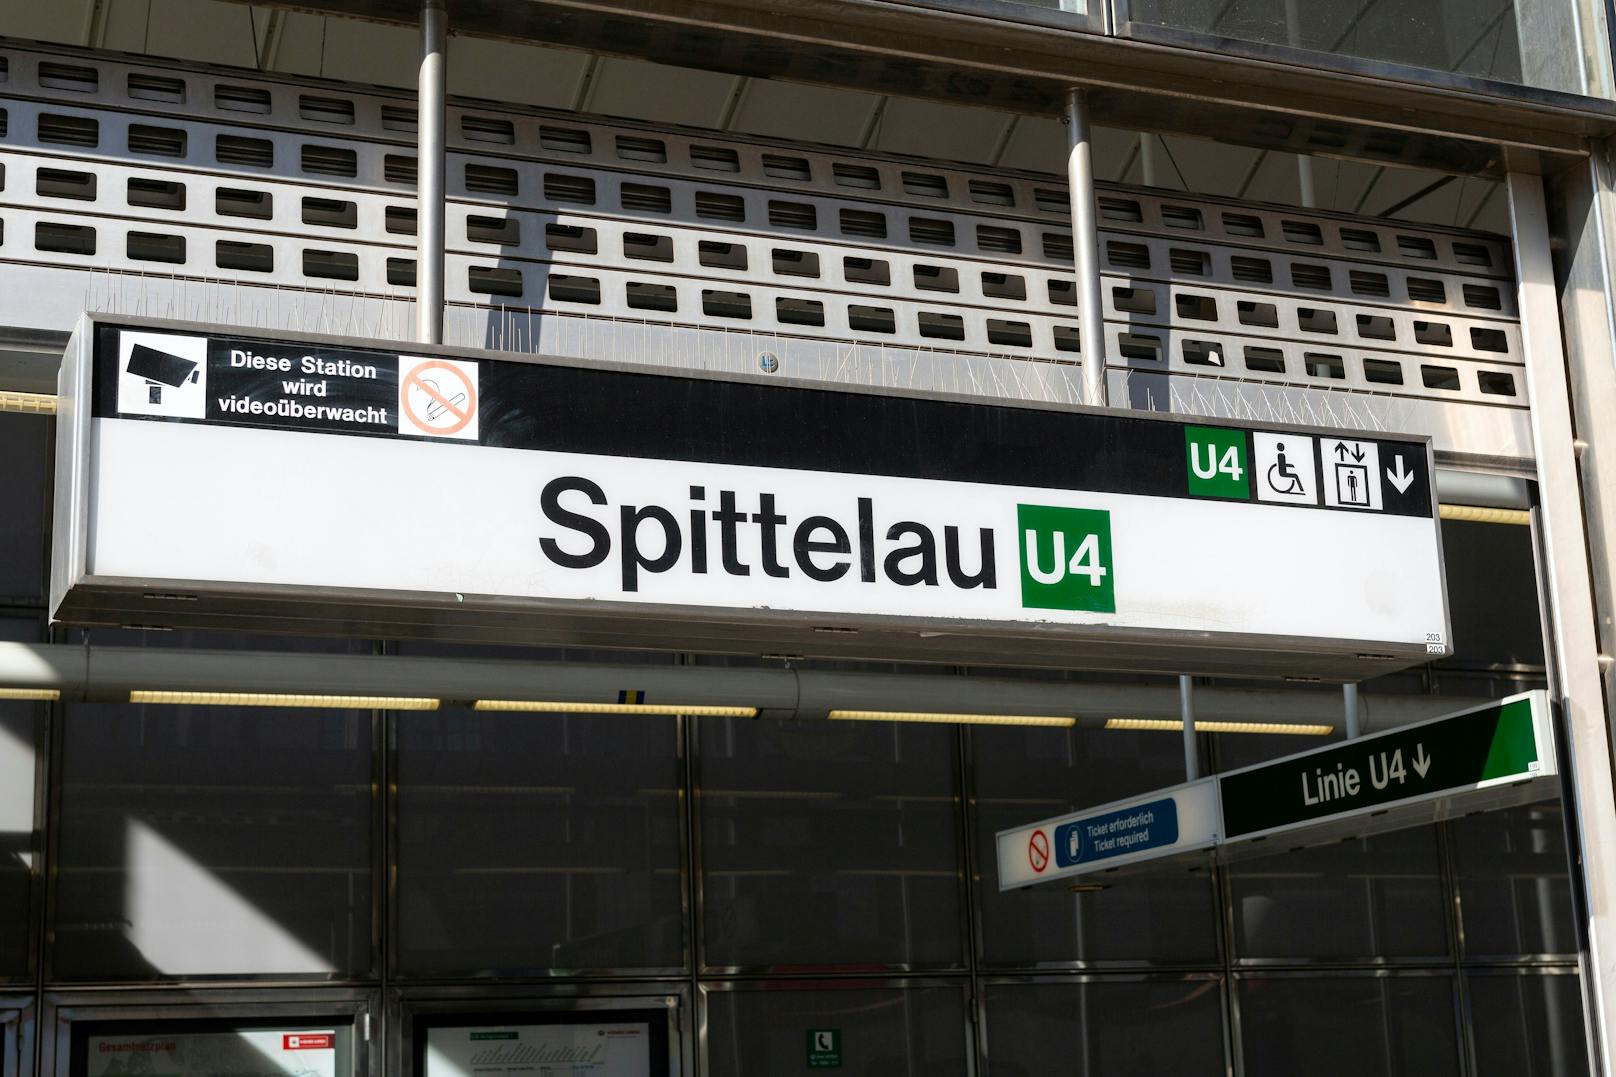 Die Bluttat ereignete sich mitten in der U-Bahn-Station Spittelau. Archivbild